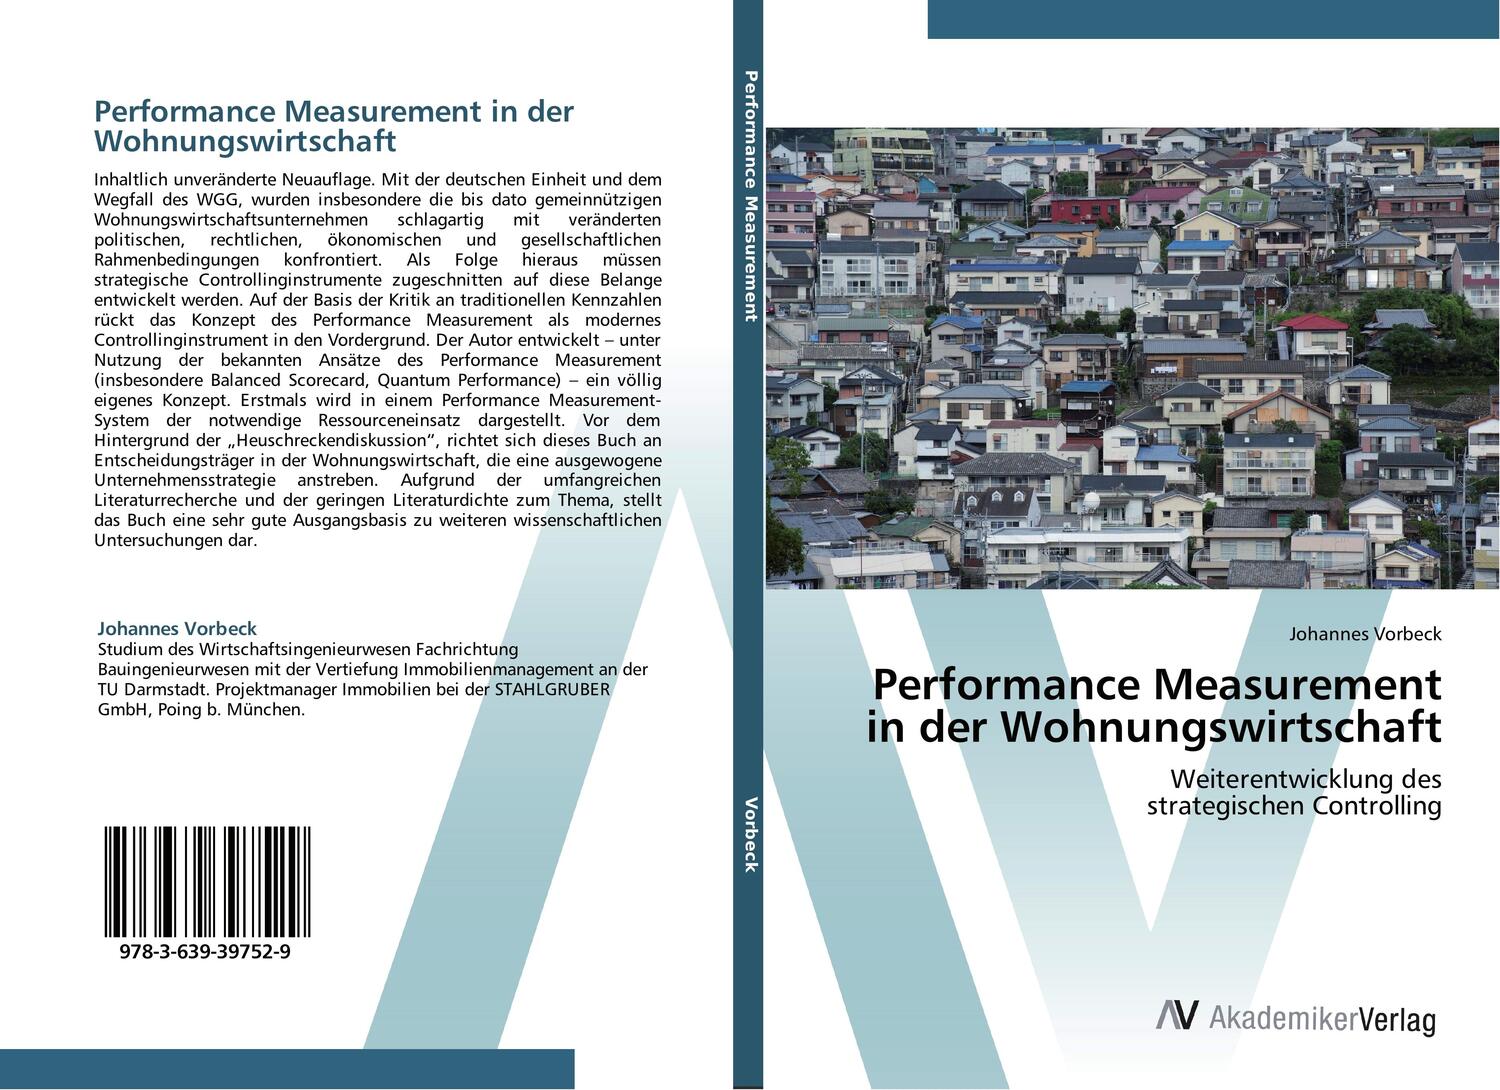 Cover: 9783639397529 | Performance Measurement in der Wohnungswirtschaft | Johannes Vorbeck